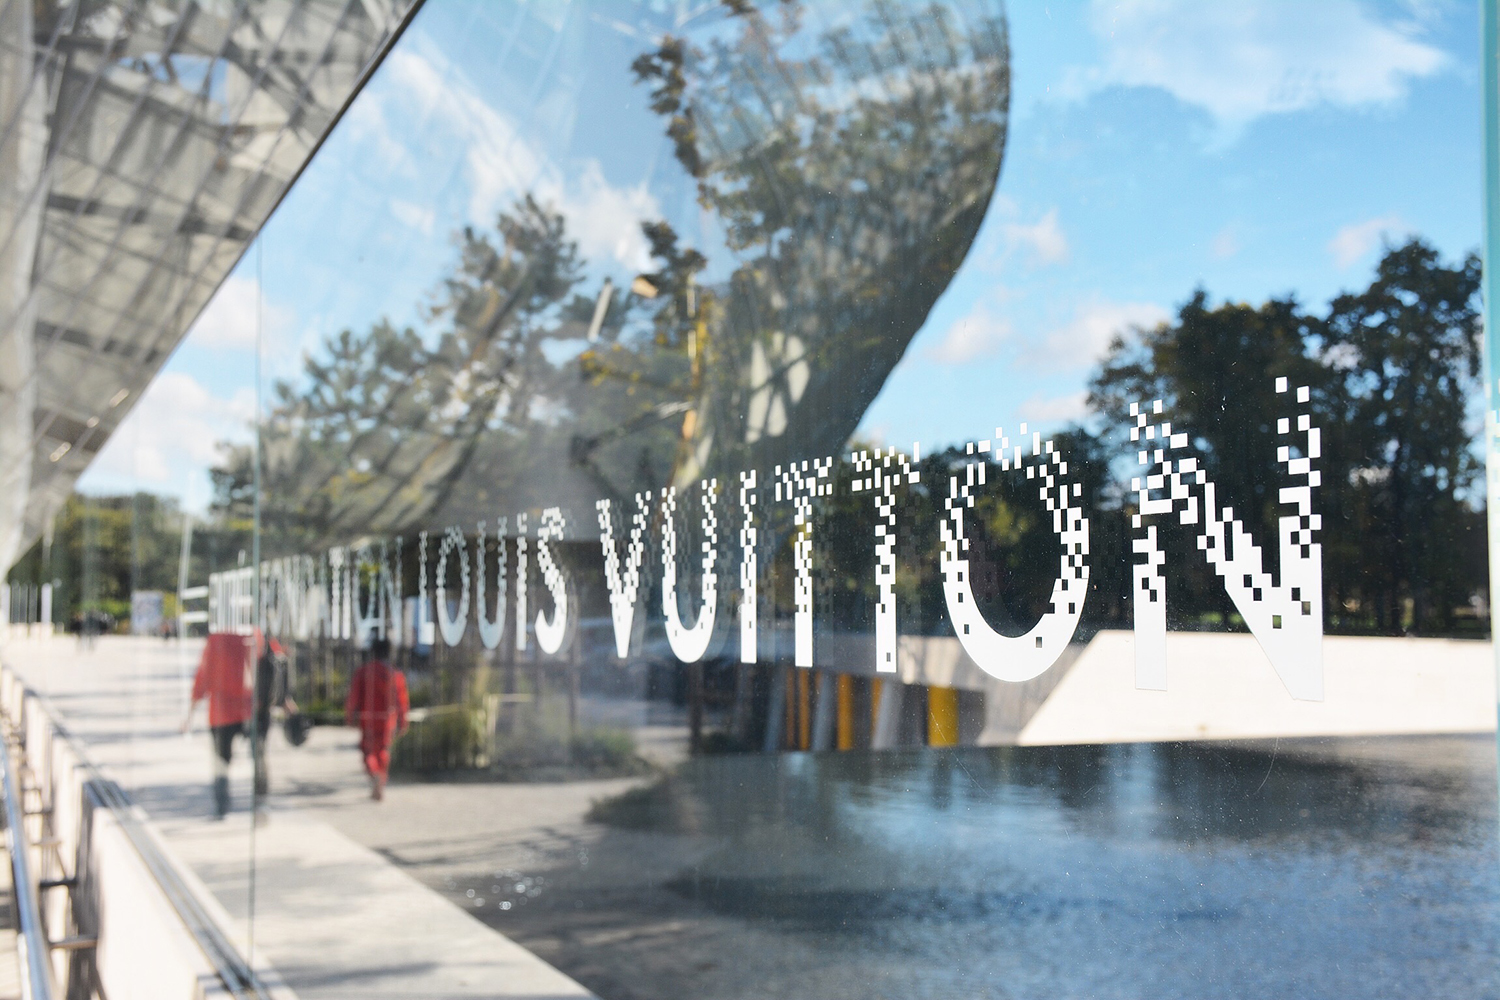 Reportage : Fondation Louis Vuitton, Paris